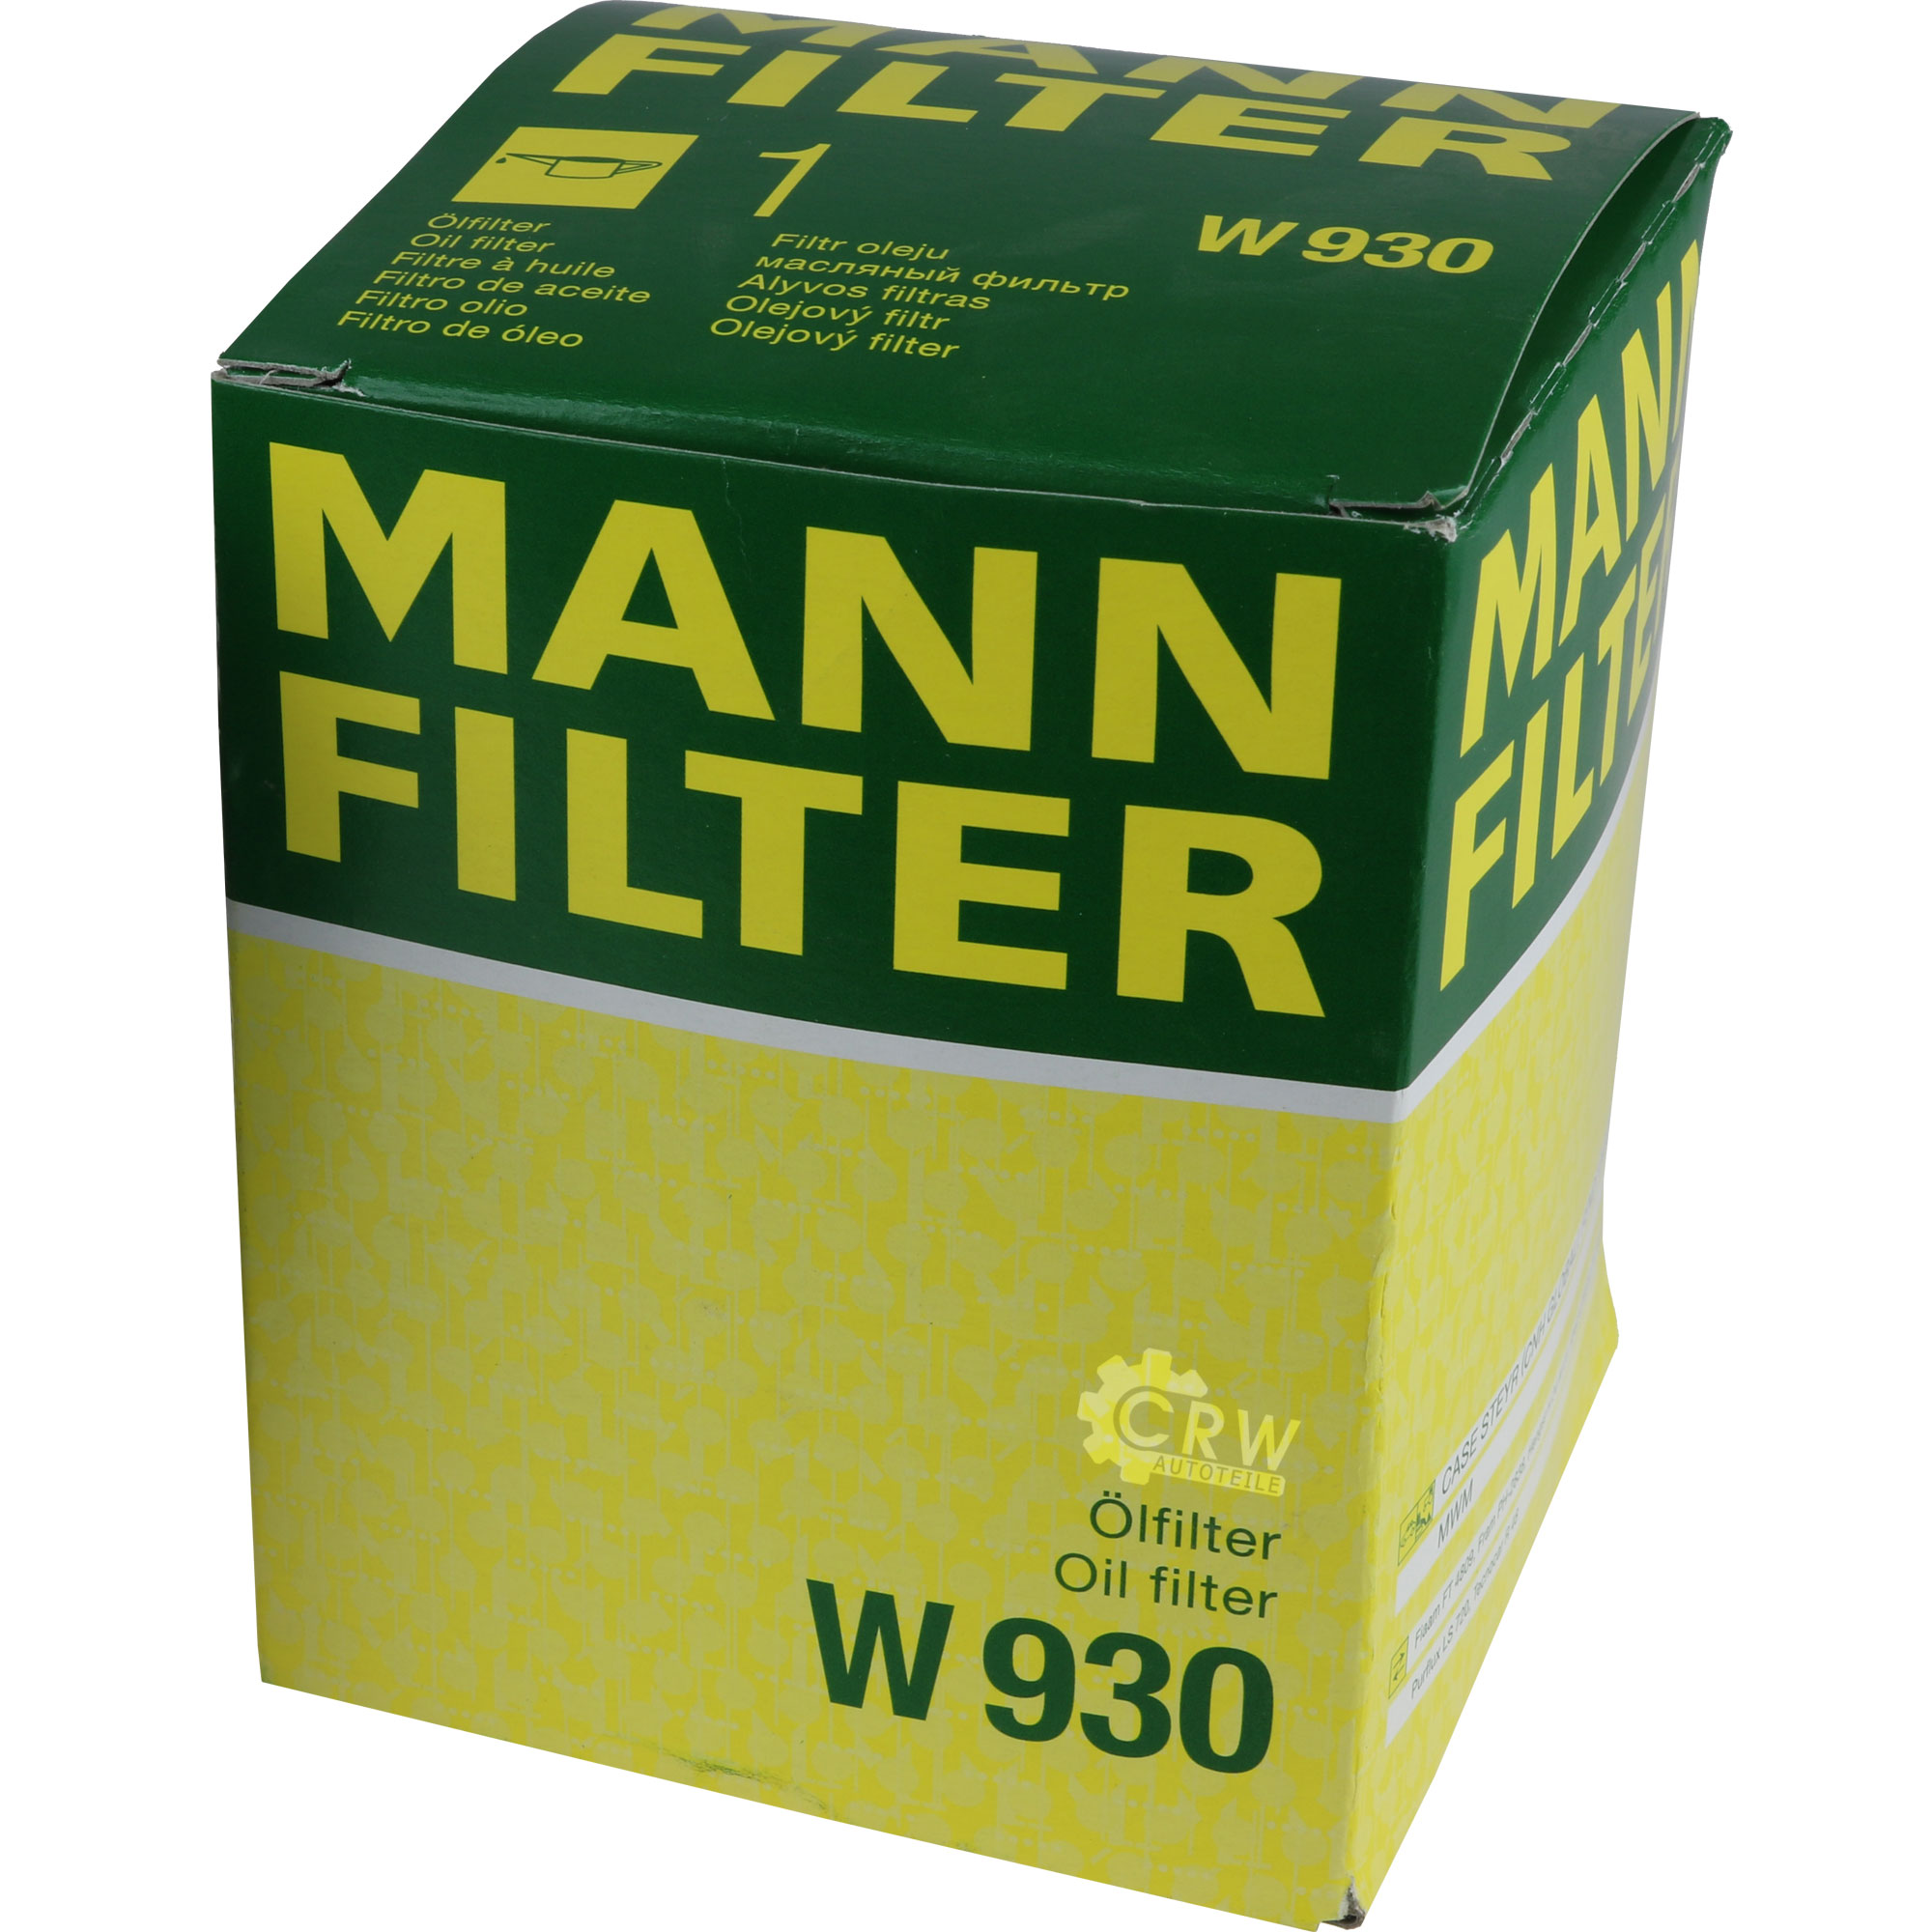 MANN-FILTER ÖlFILTER für Arbeitshydraulik W 930